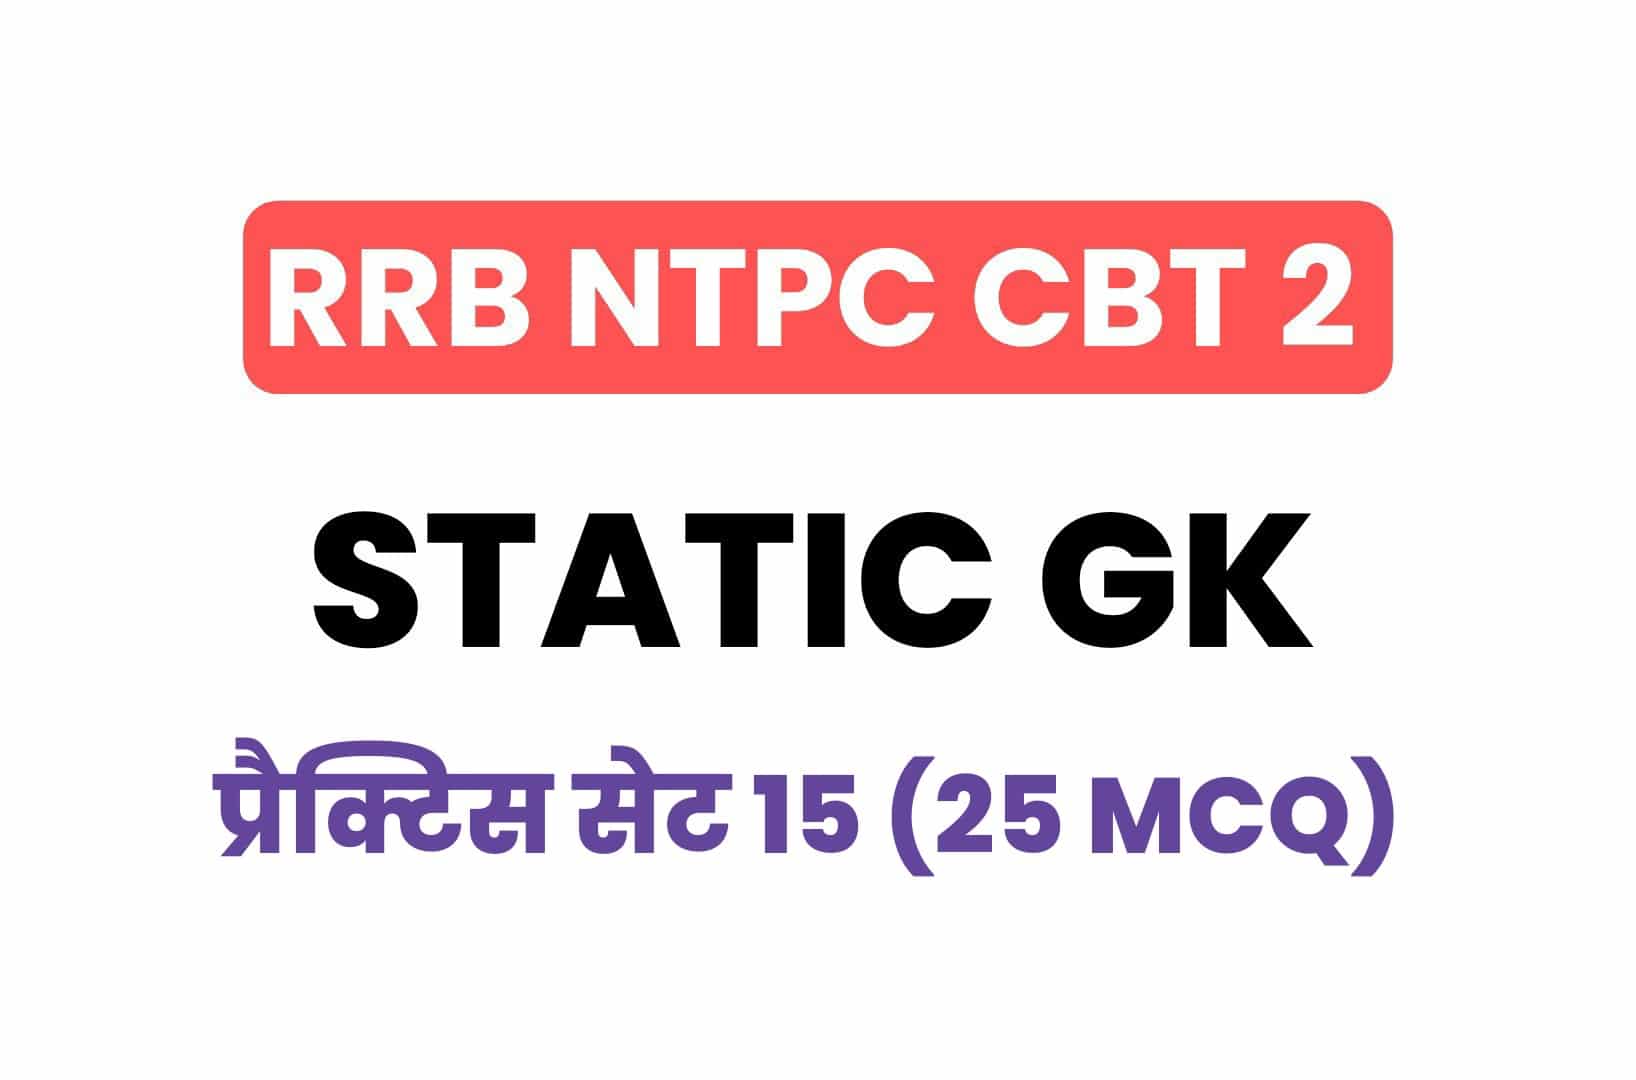 RRB NTPC CBT 2 Static GK प्रैक्टिस सेट 15: आख़िरी दिनों में करें इन महत्वपूर्ण प्रश्नों का अध्ययन